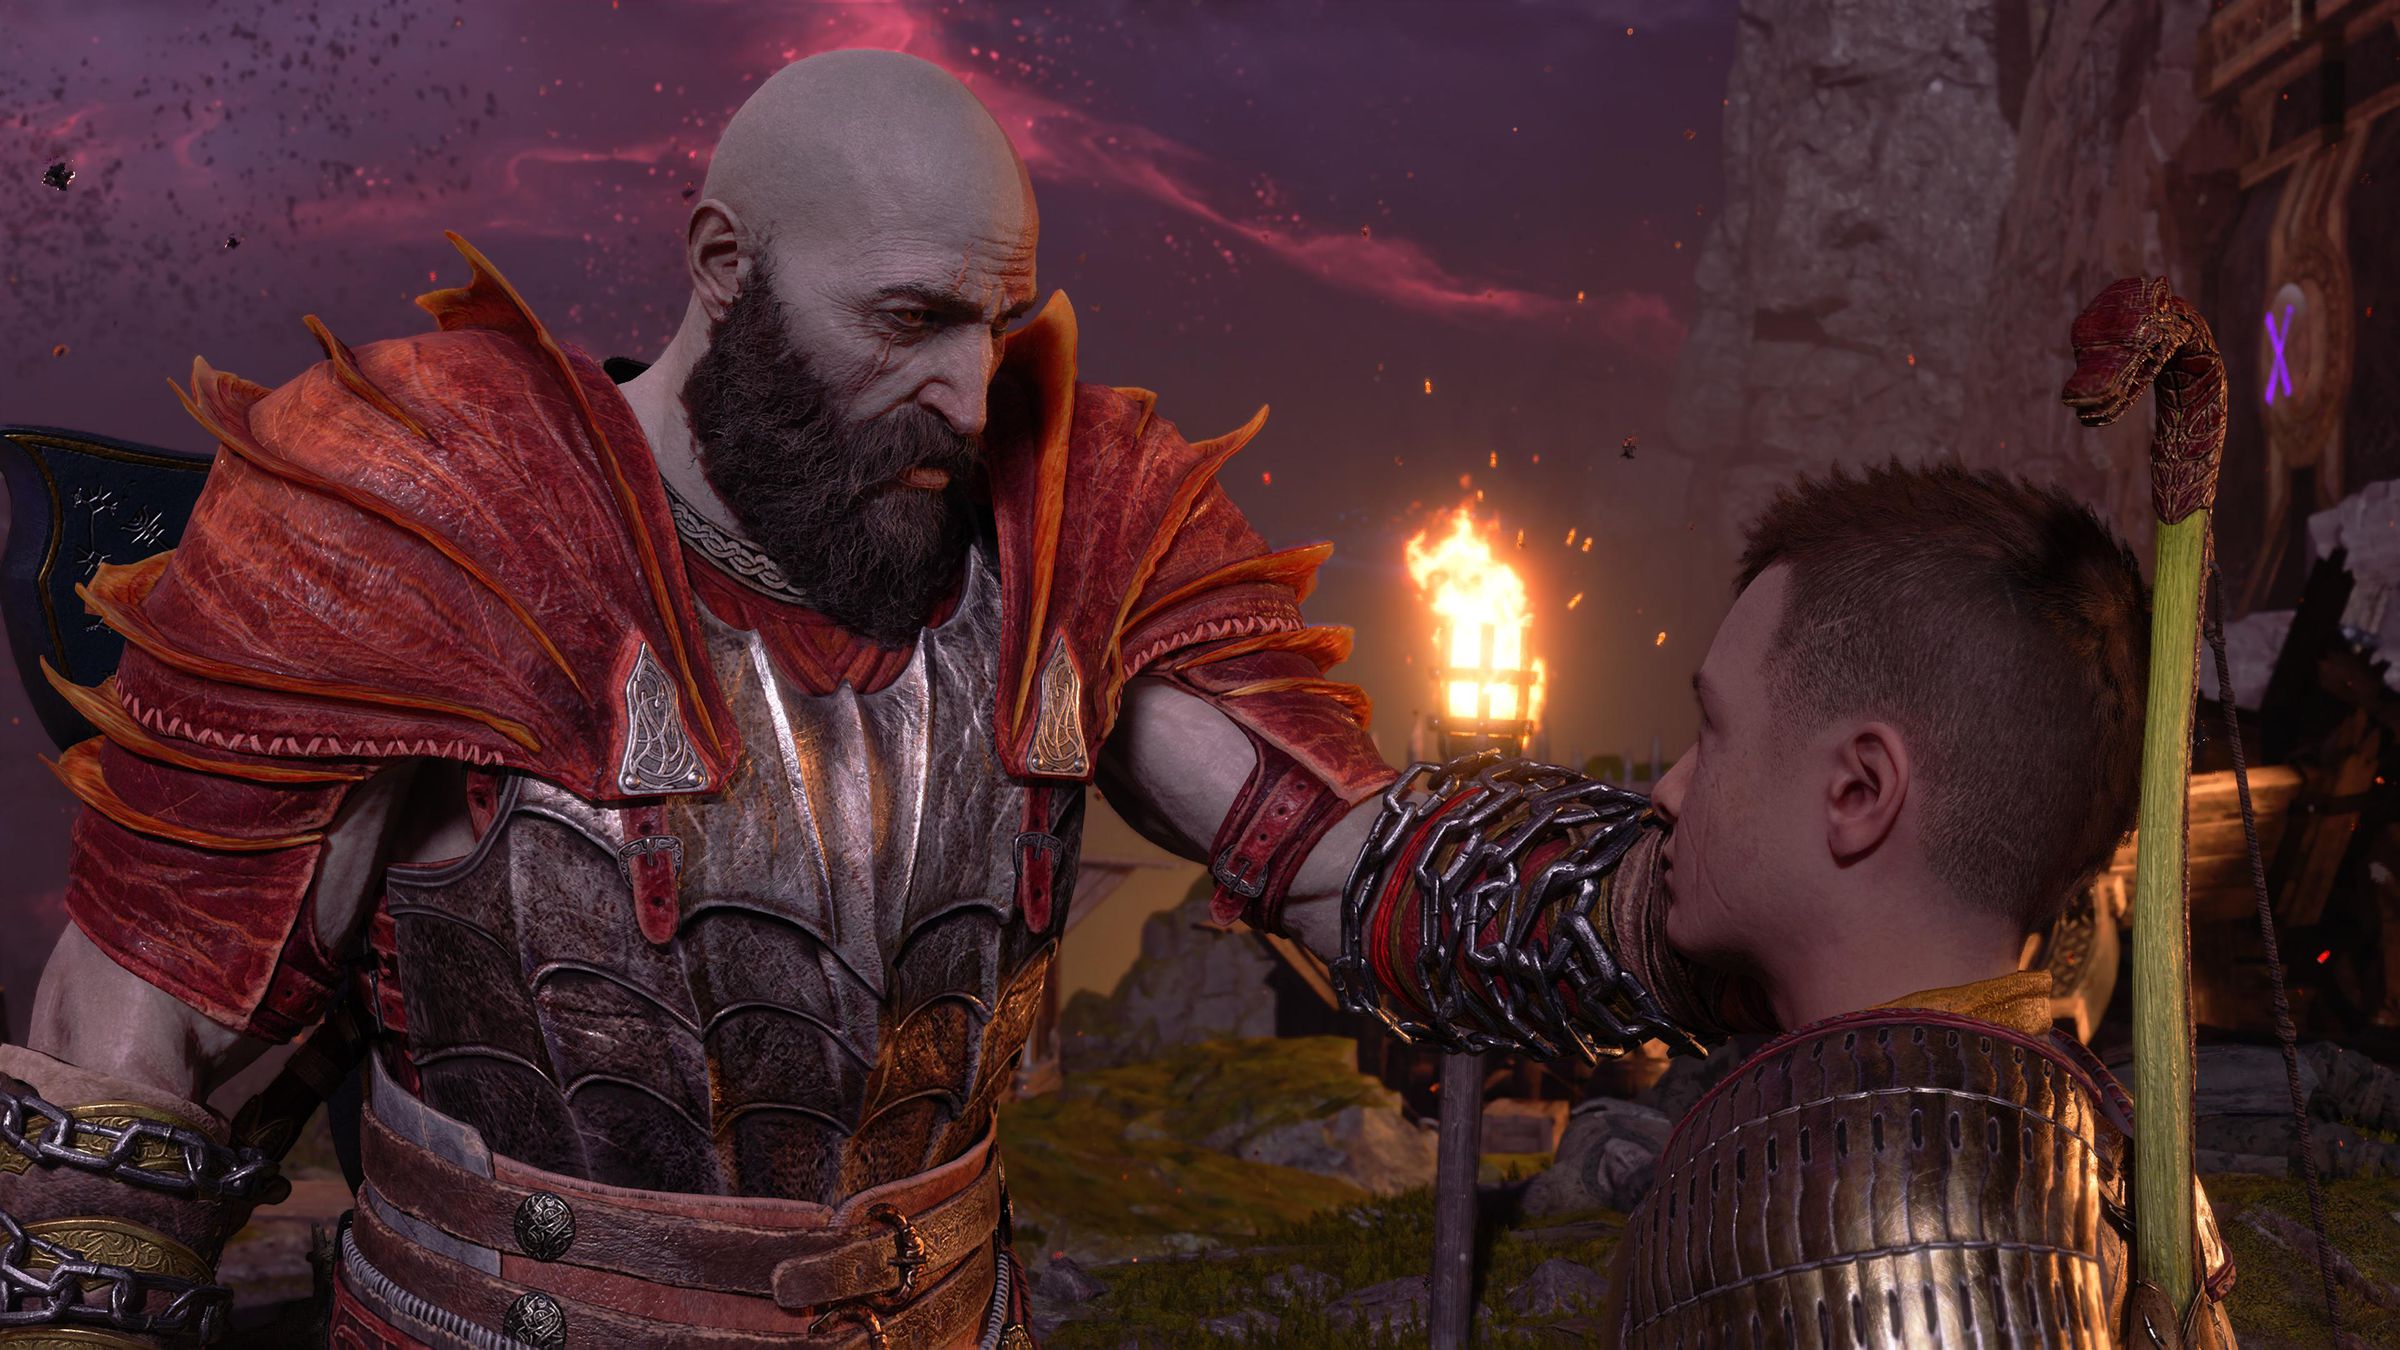 Schermata di God of War Ragnarök con Kratos che tocca dolcemente il volto di suo figlio Atreus in tutta tranquillità.